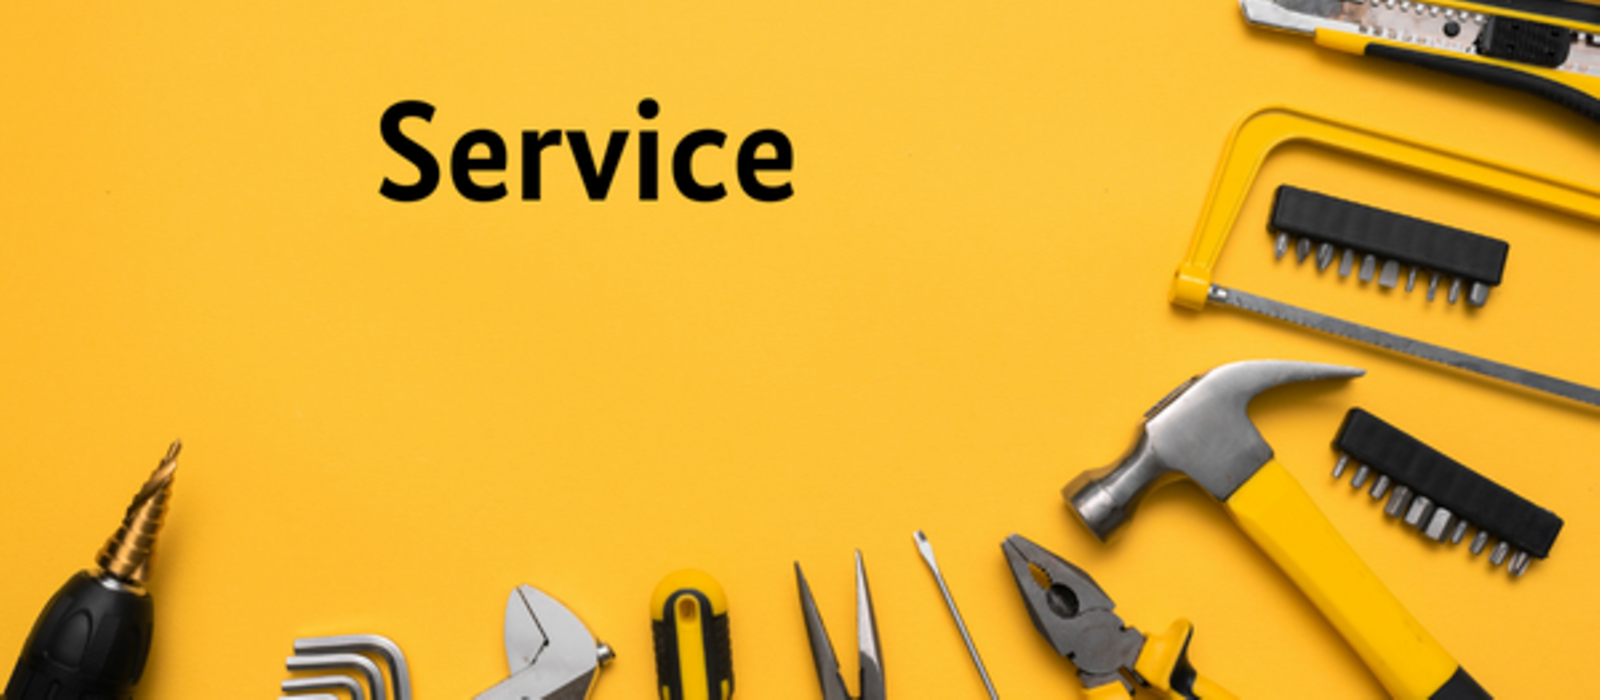 Schriftzug "Service", Werkzeuge am unteren Bildrand